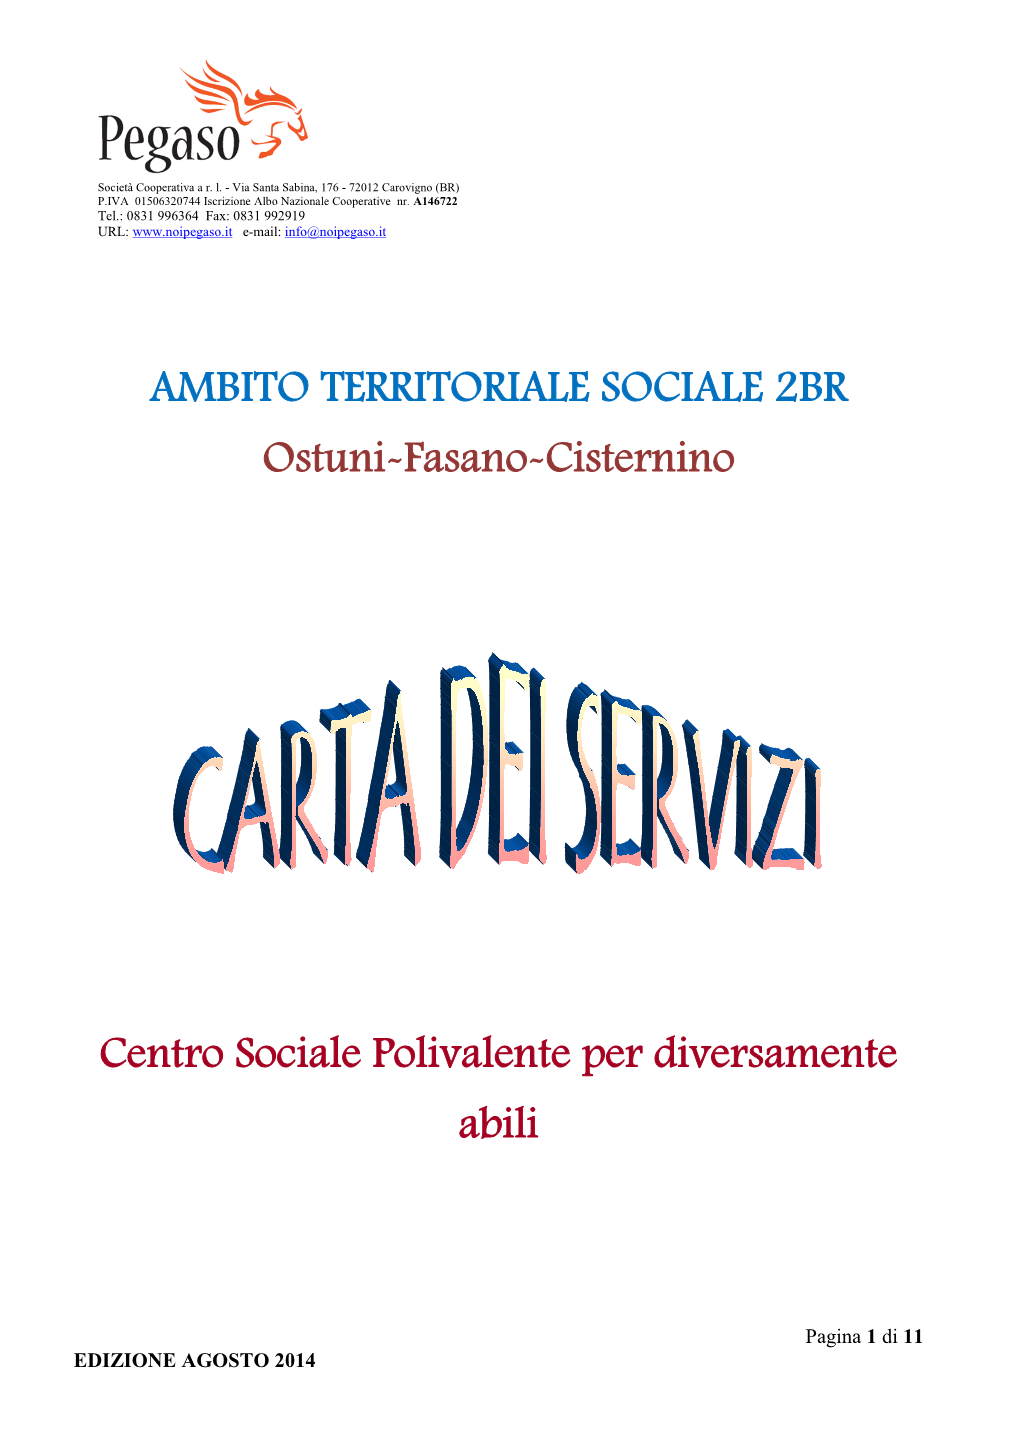 AMBITO TERRITORIALE SOCIALE 2BR Ostuni-Fasano-Cisternino